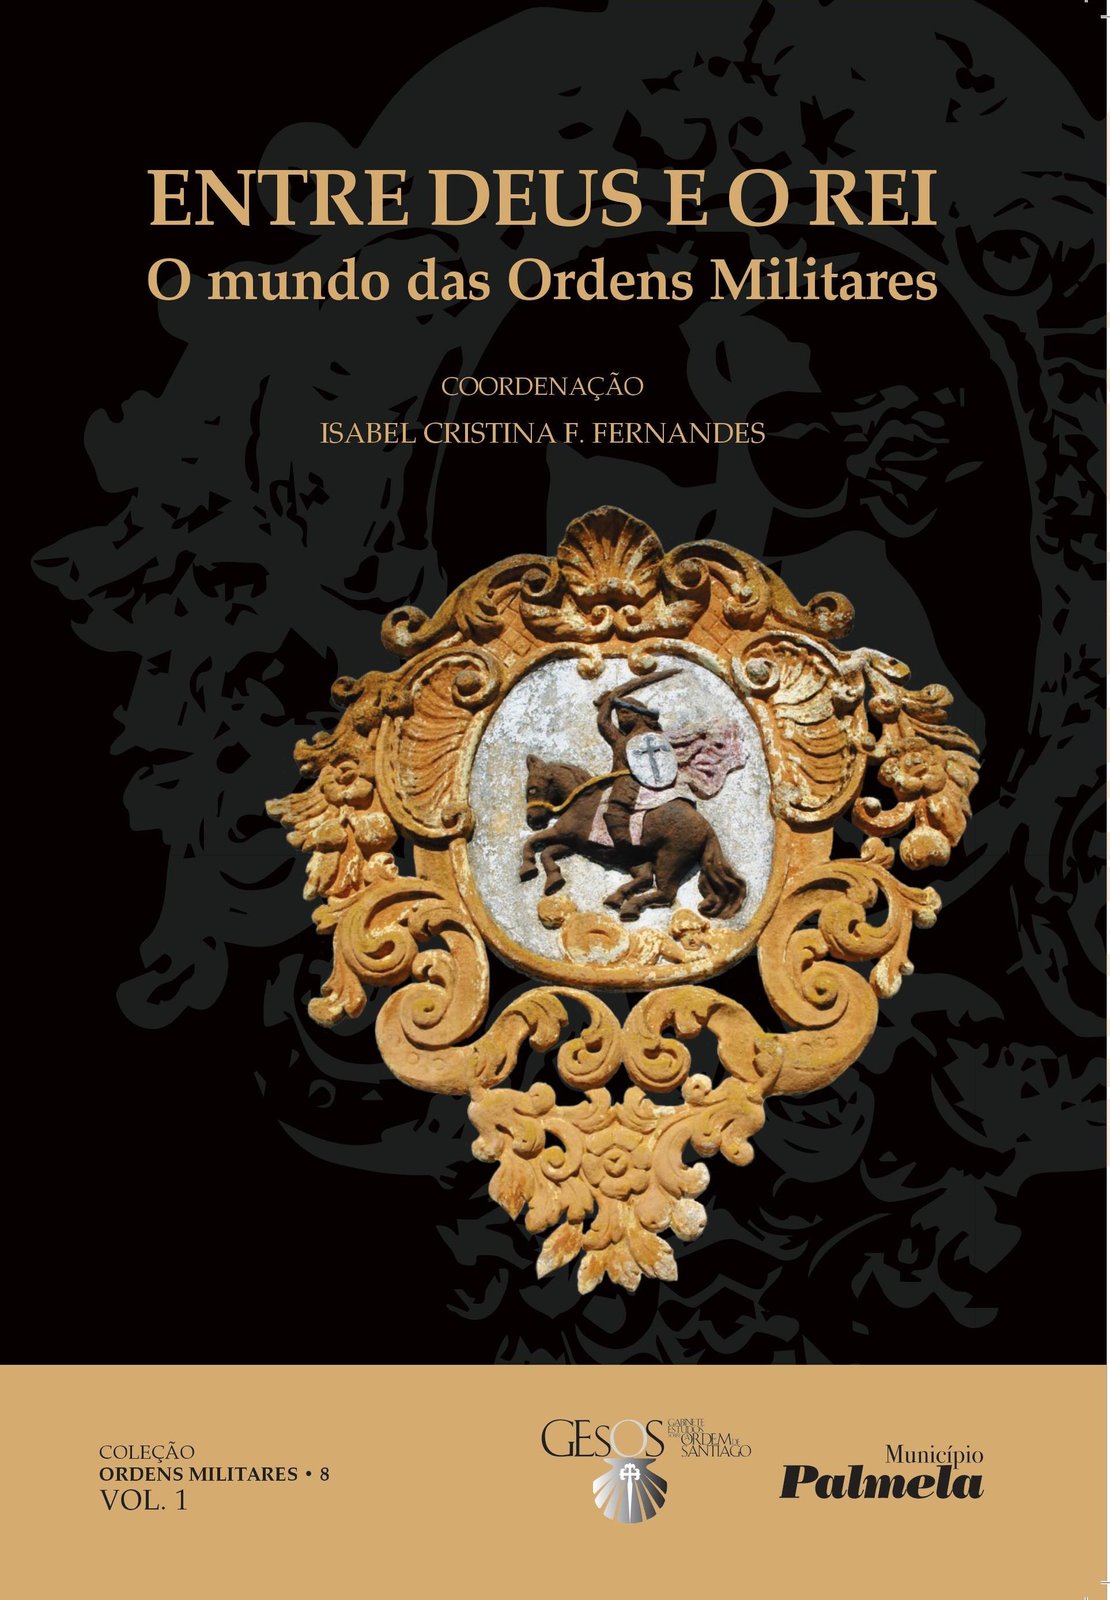 Município de Palmela lança livro sobre as Ordens Militares